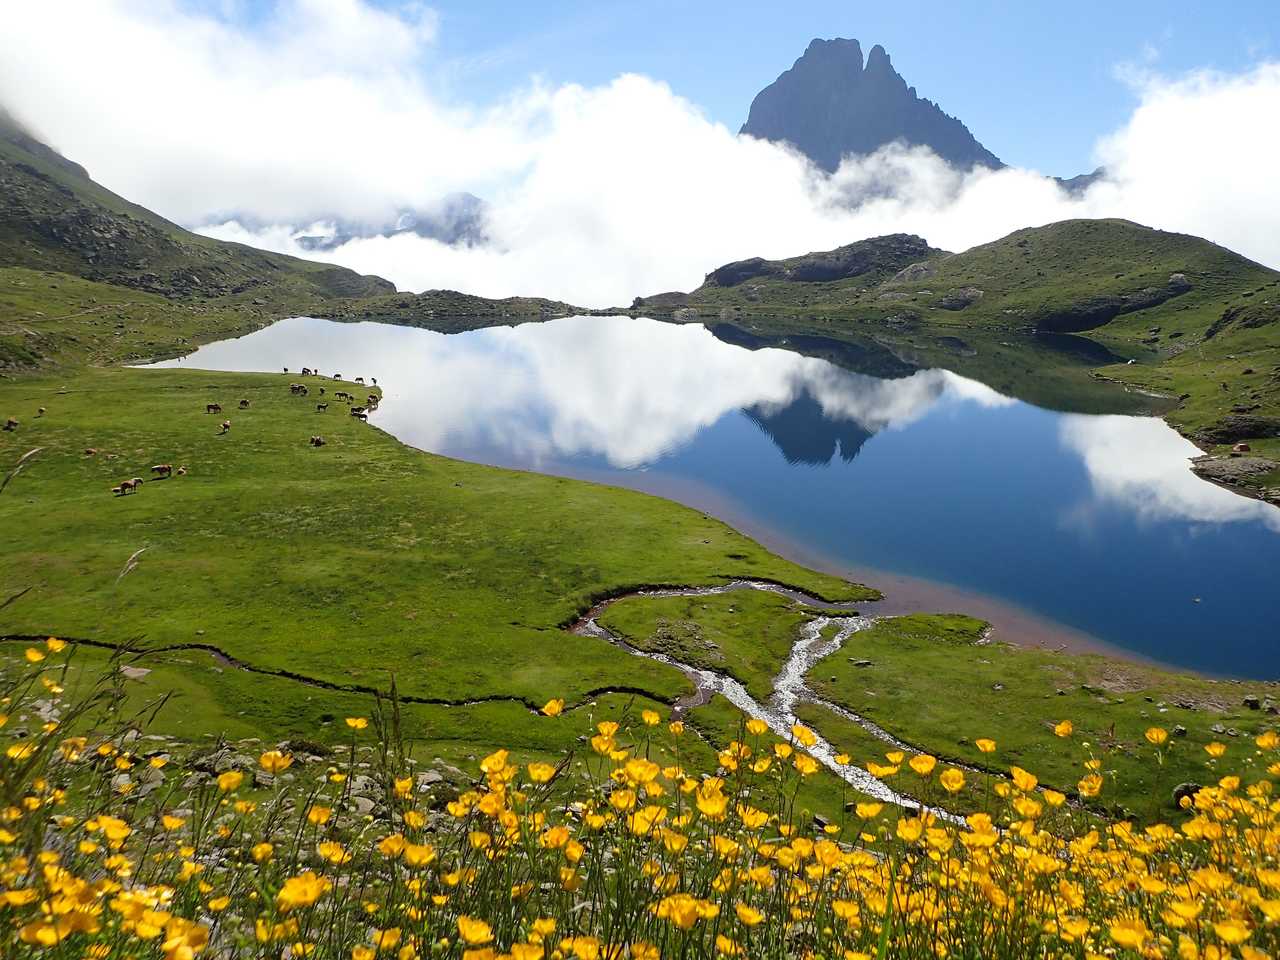 Magnifique lac lors d'un trek sur le GR10, dans les Pyrénées